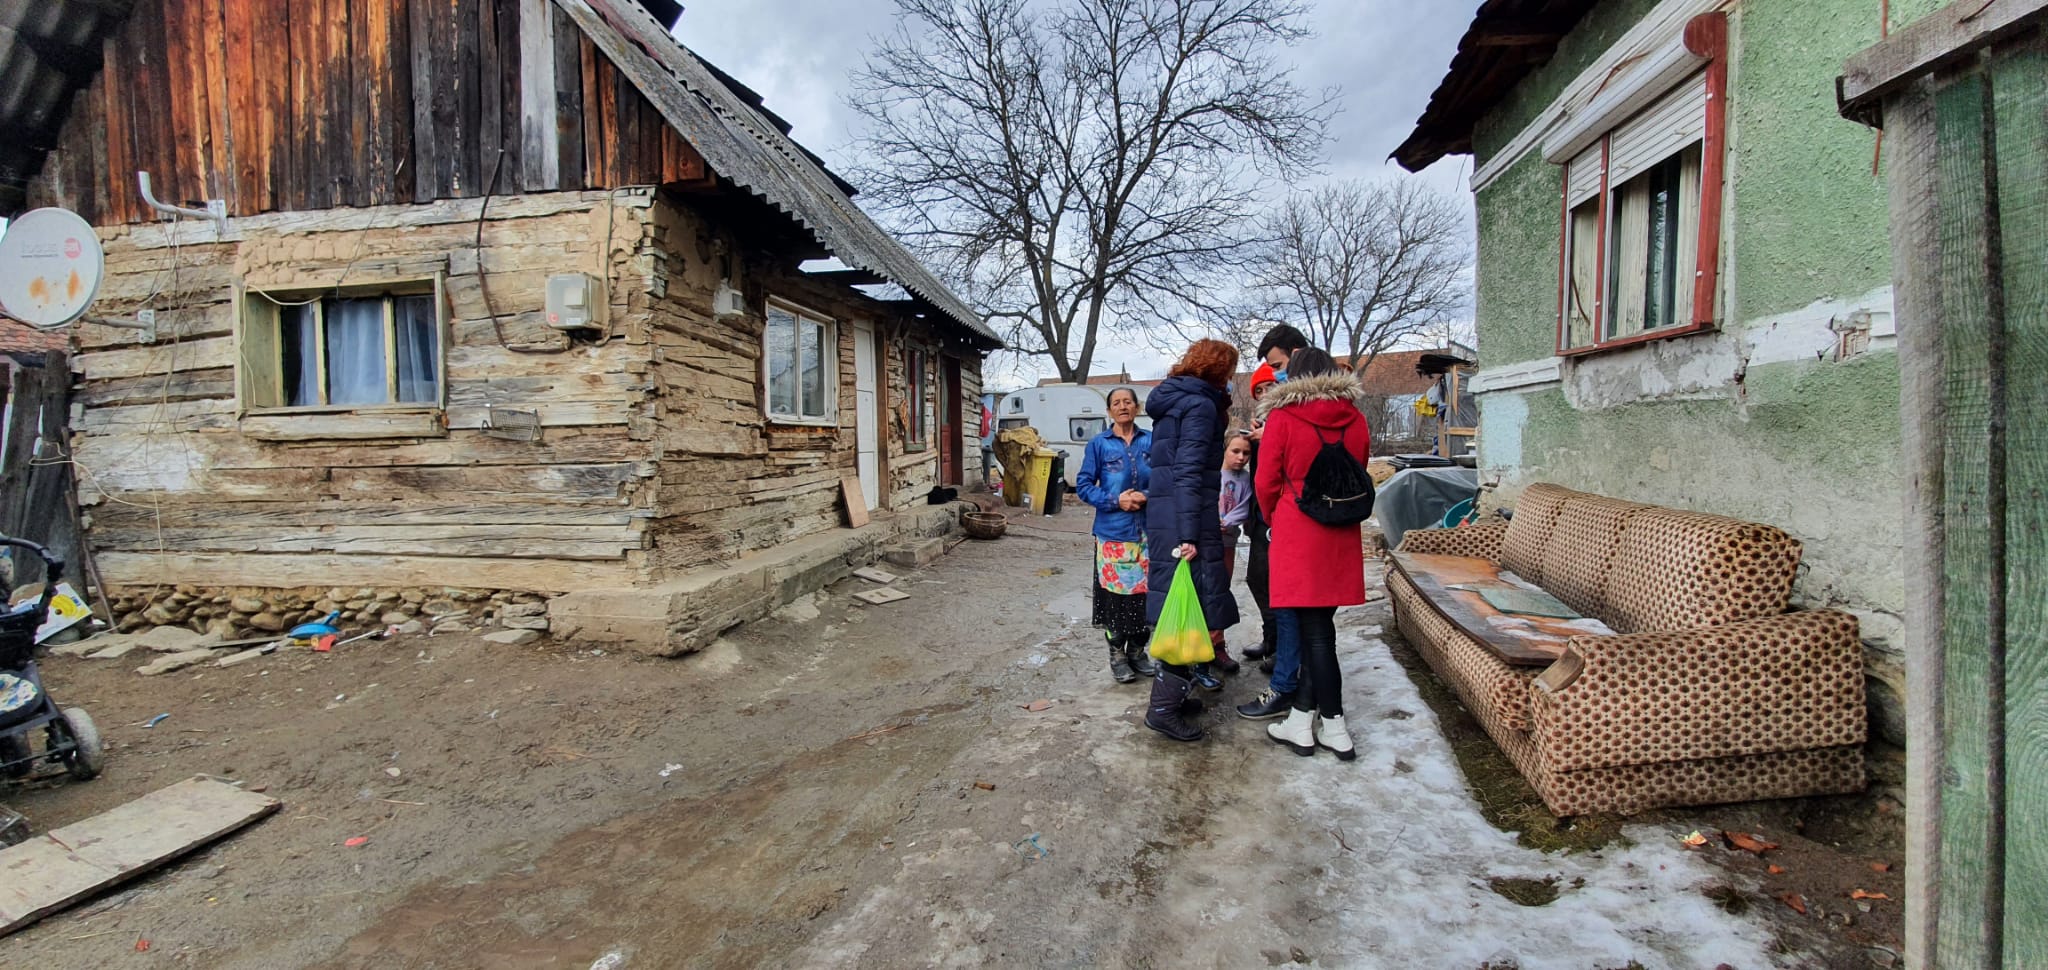 Cum se luptă voluntarii pedagogi din Sibiu să țină copii săraci în școli: „Putem dărui cu milă. Și de fapt nu dăruim”